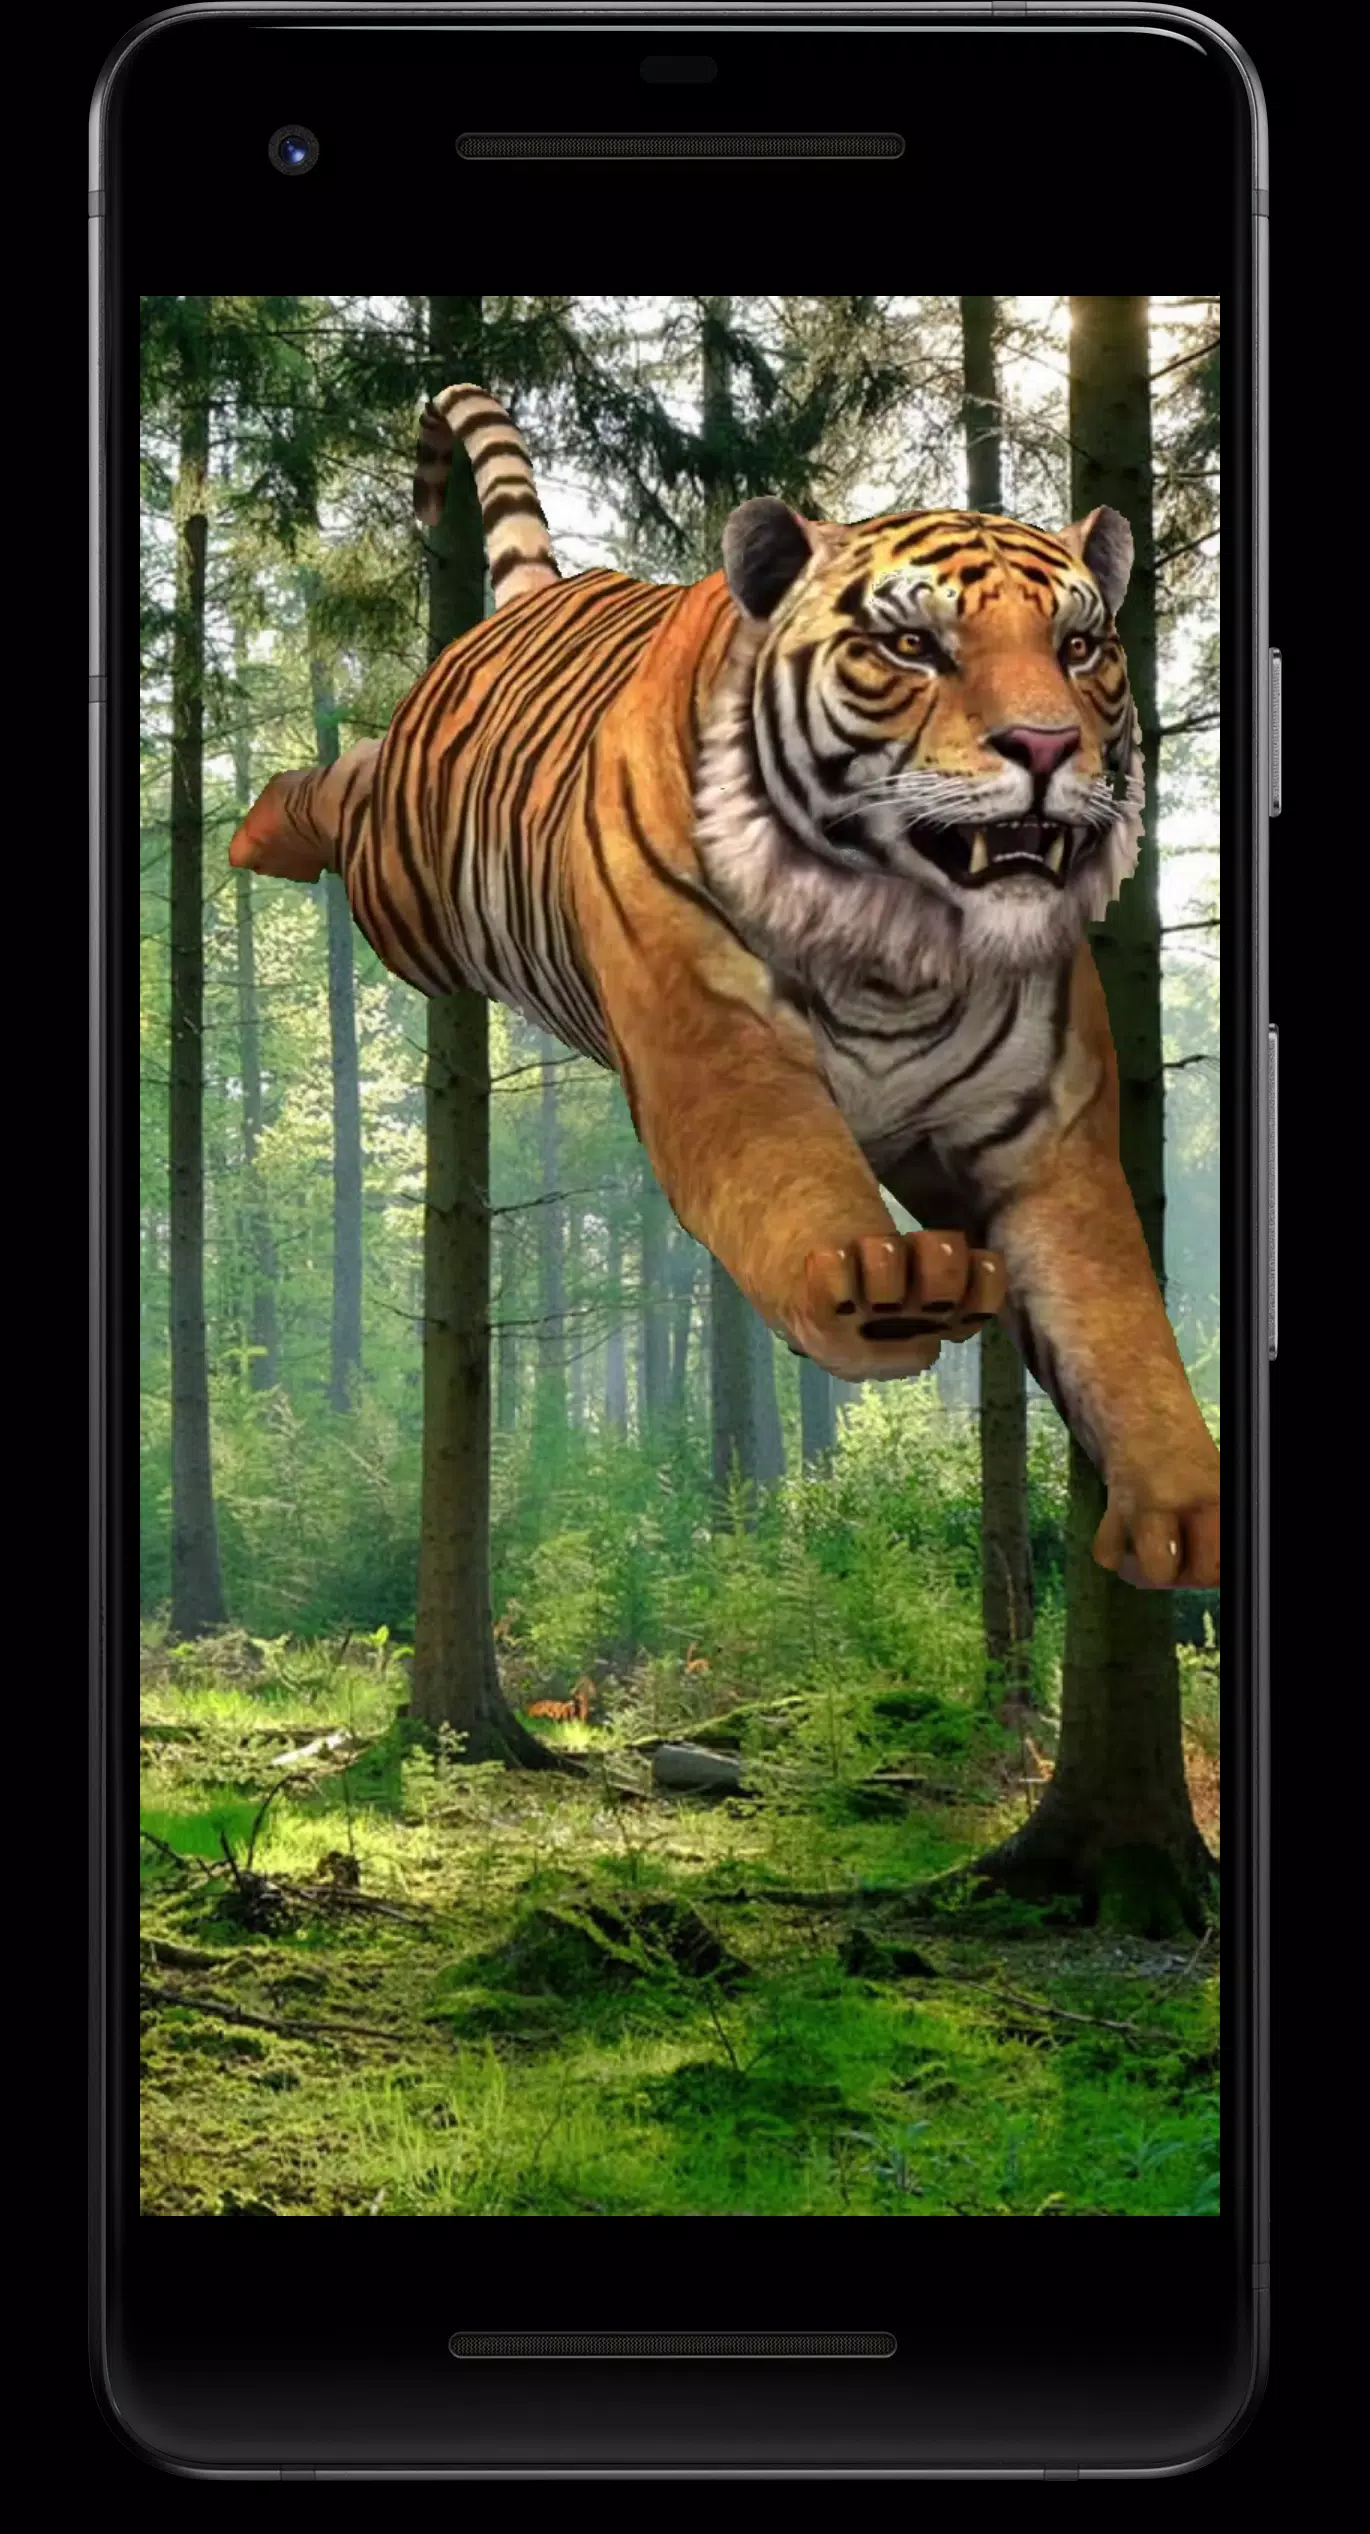 Tiger 3D Video Live Wallpaper APK cho Android là một ứng dụng vô cùng thú vị và tiện ích. Với chất lượng hình ảnh cực kì sắc nét và màu sắc sinh động, bạn sẽ cảm thấy như đang nhìn thấy một chú hổ thật sự hiện diện trên màn hình điện thoại của mình.